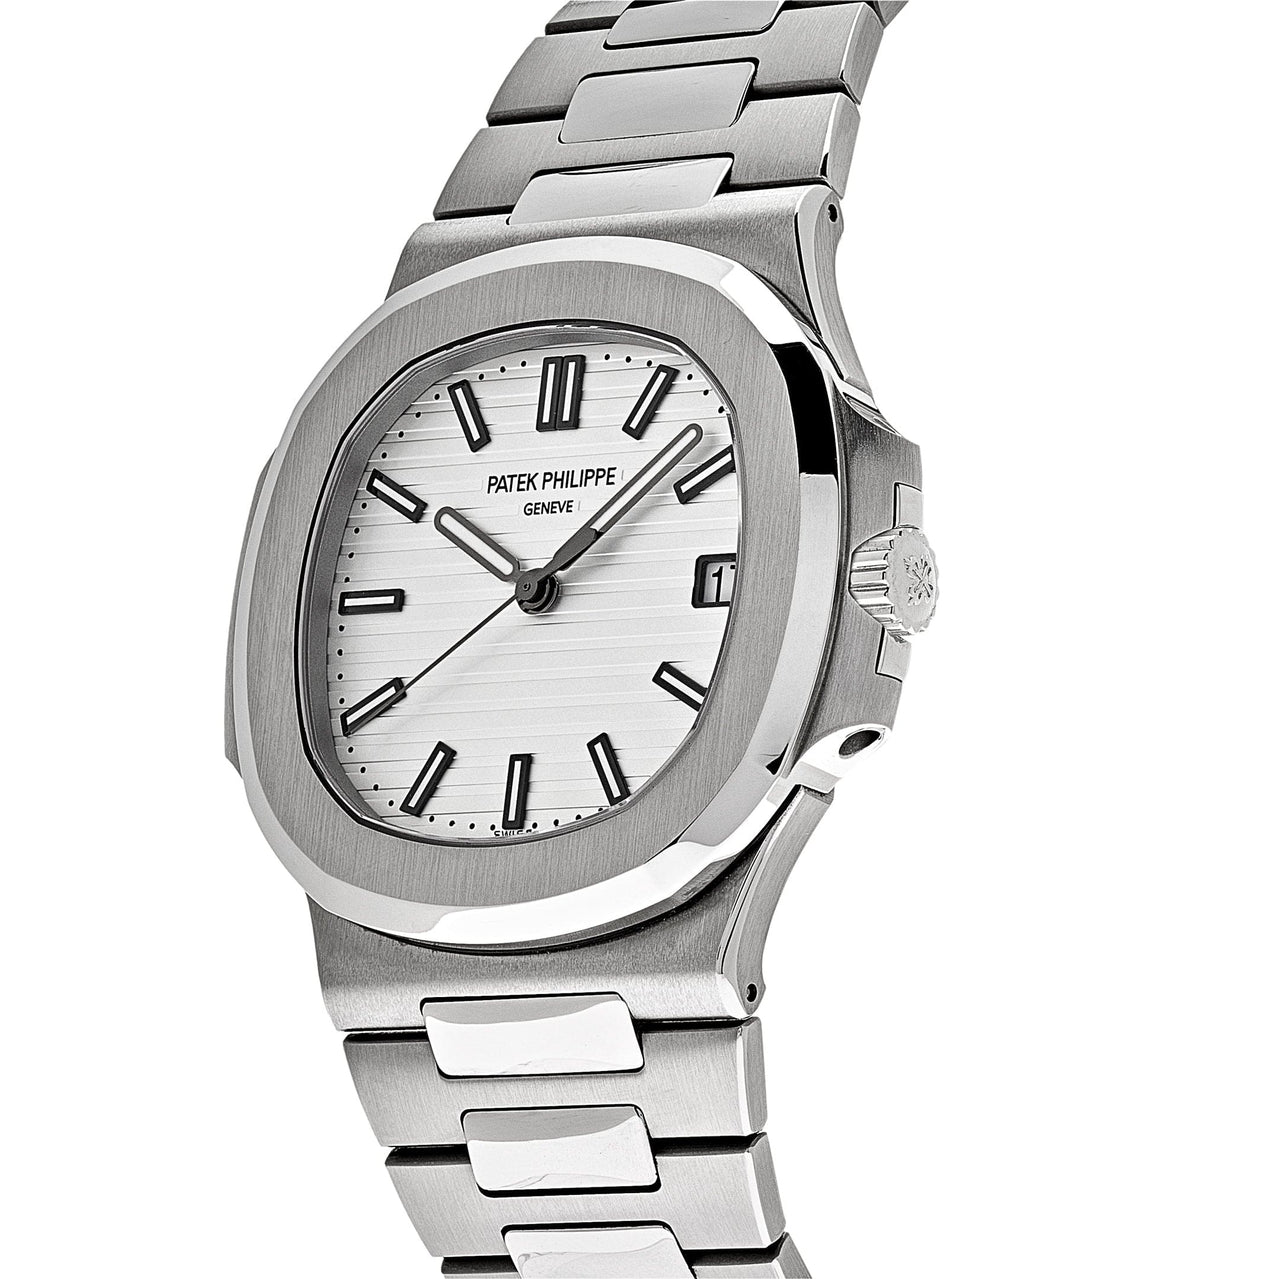 Luxury Watch Patek Philippe Nautilus Stainless Steel White Dial 5711/1A-011 (2016) Wrist Aficionado